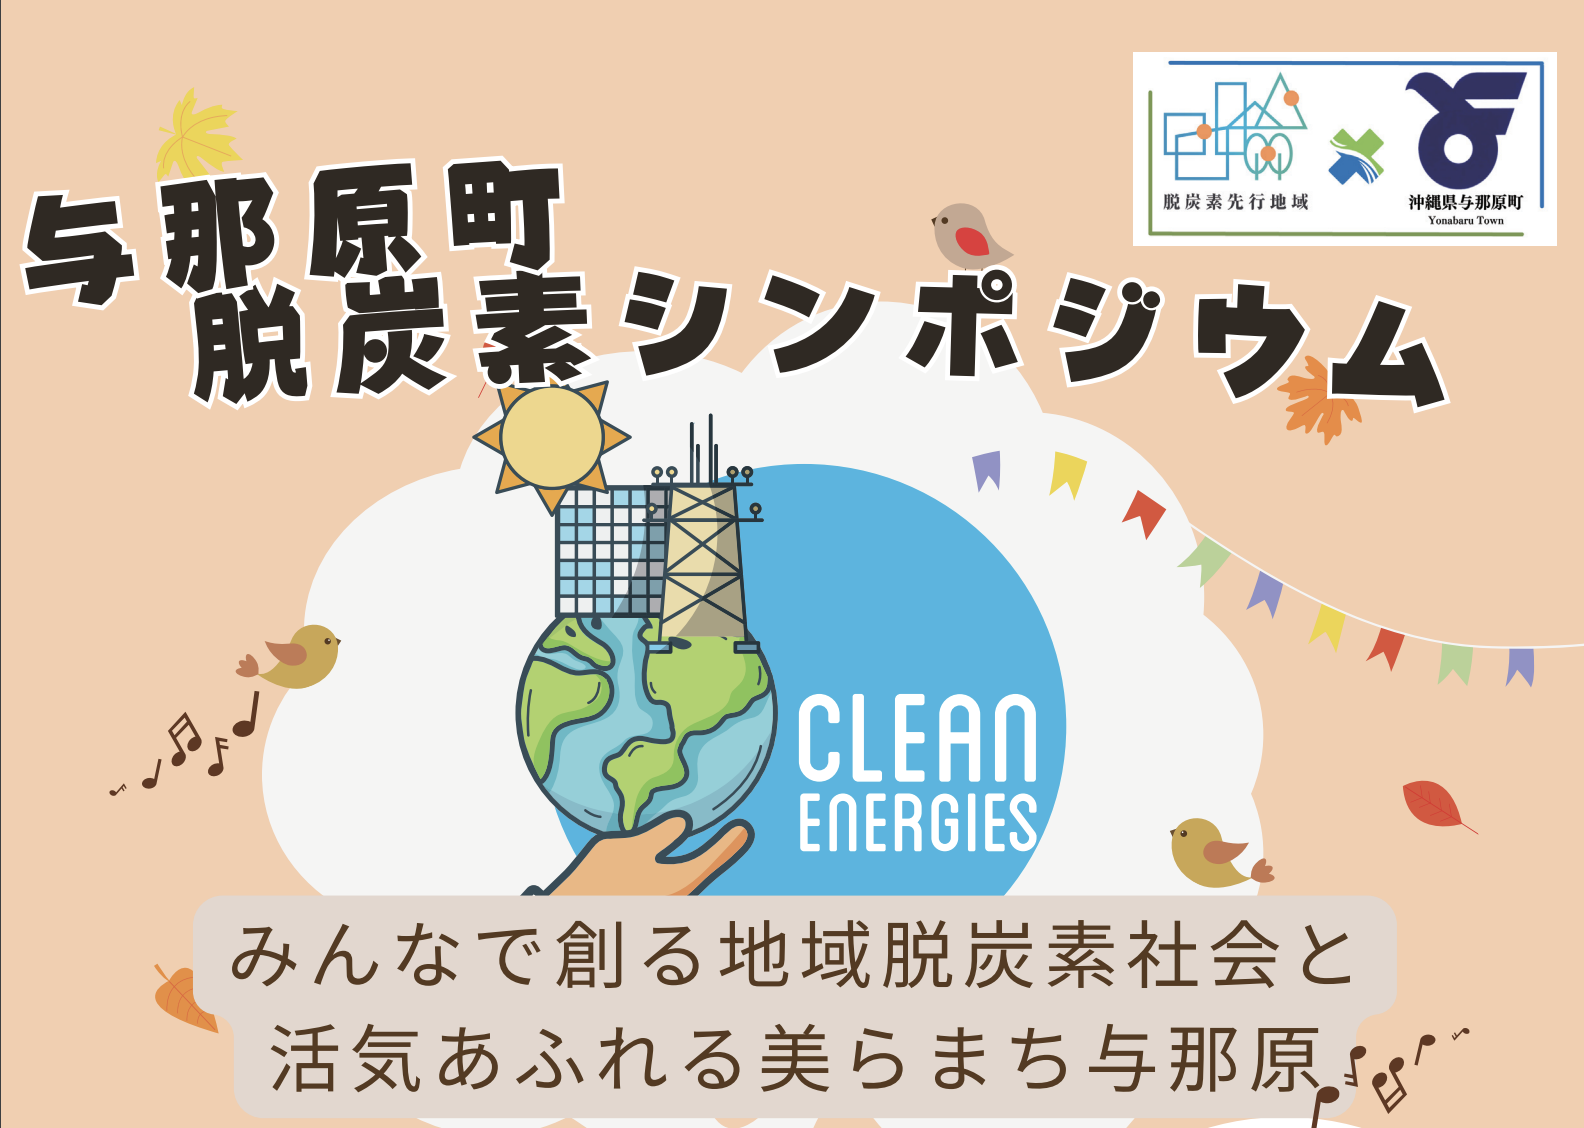 沖縄県与那原町脱炭素シンポジウムにGreen Innovator Academy受講生チームが登壇します